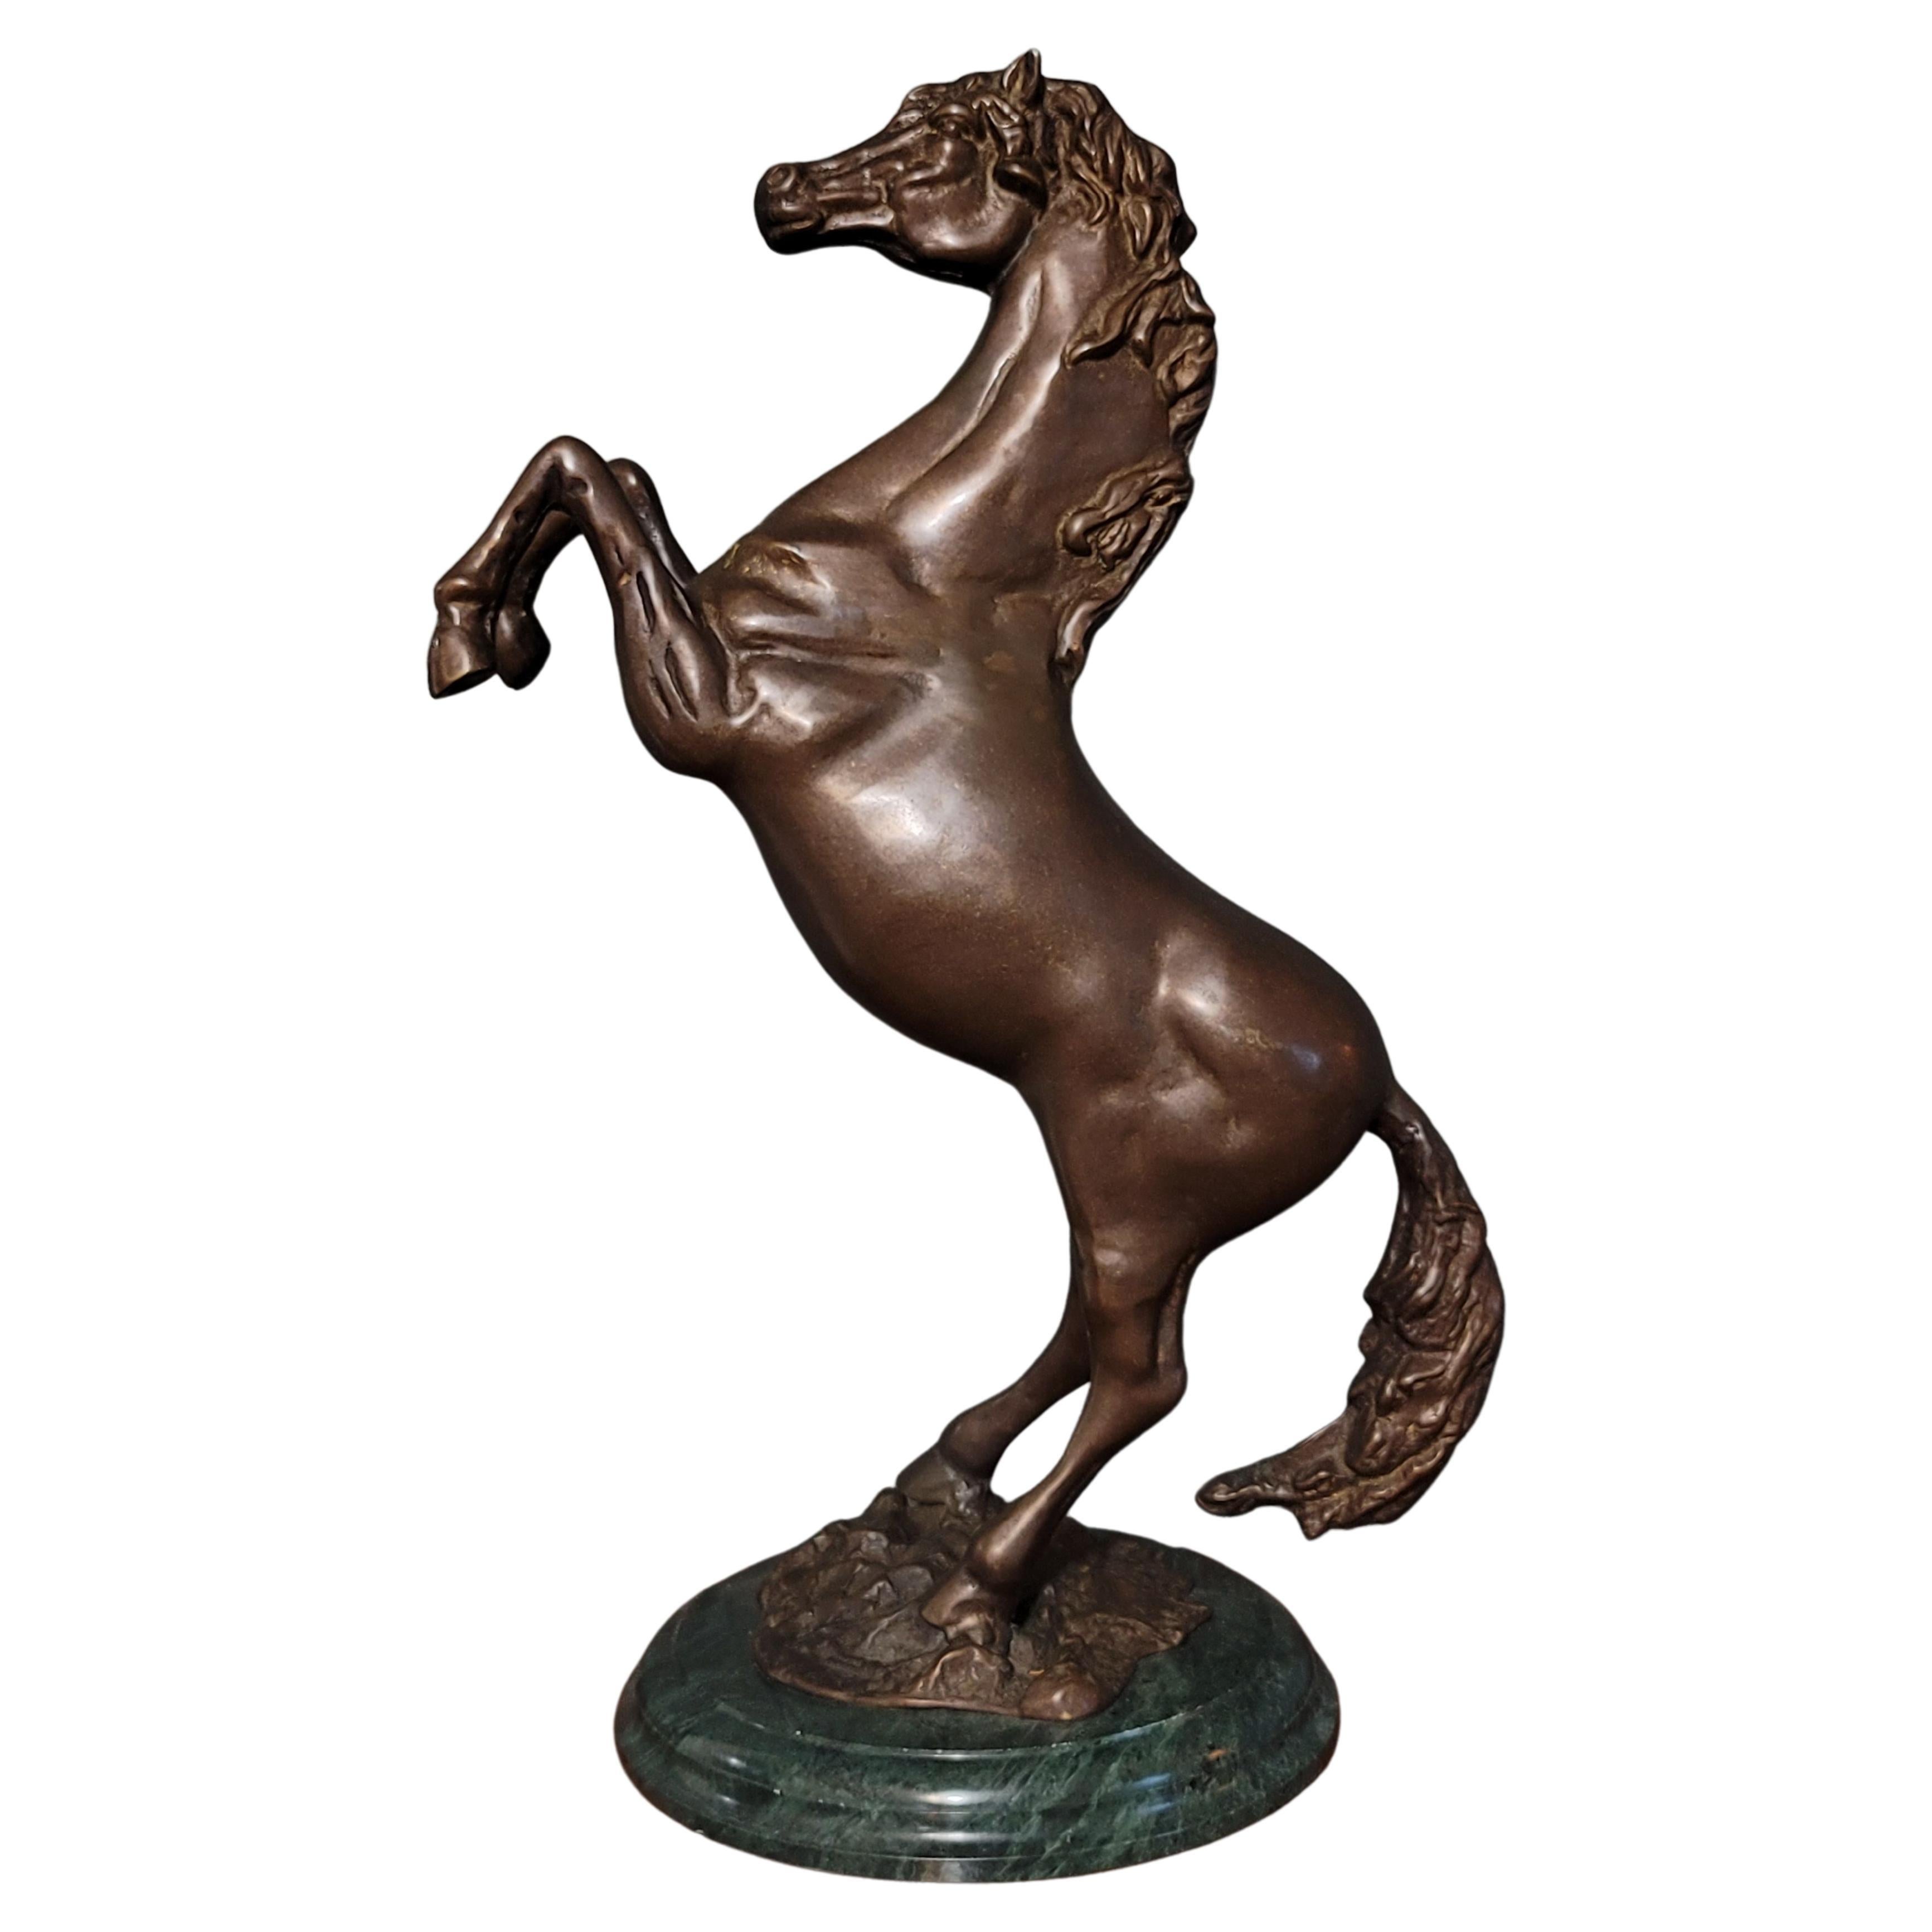 Bronzeskulptur eines Pferdes aus Pferden, groß und schwer